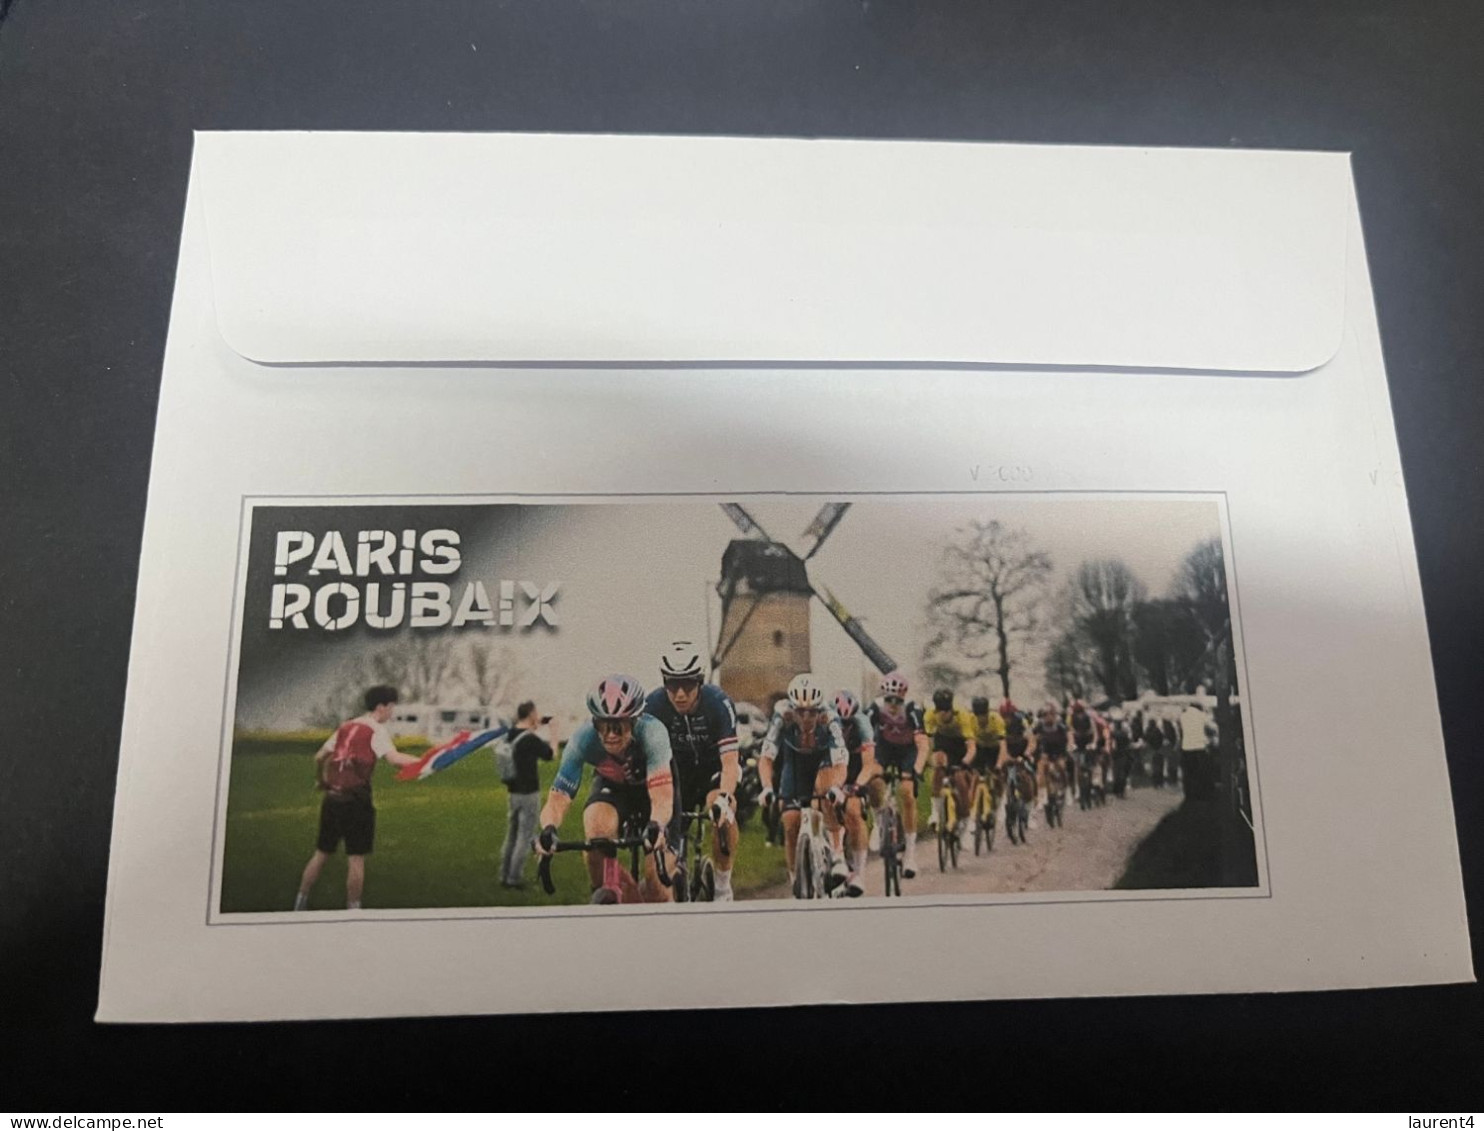 8-4-2024 (1 Z 22) France  - 121st Paris-Roubaix Cycling Race (men & Women Winners) 7 April 2024 - Ciclismo